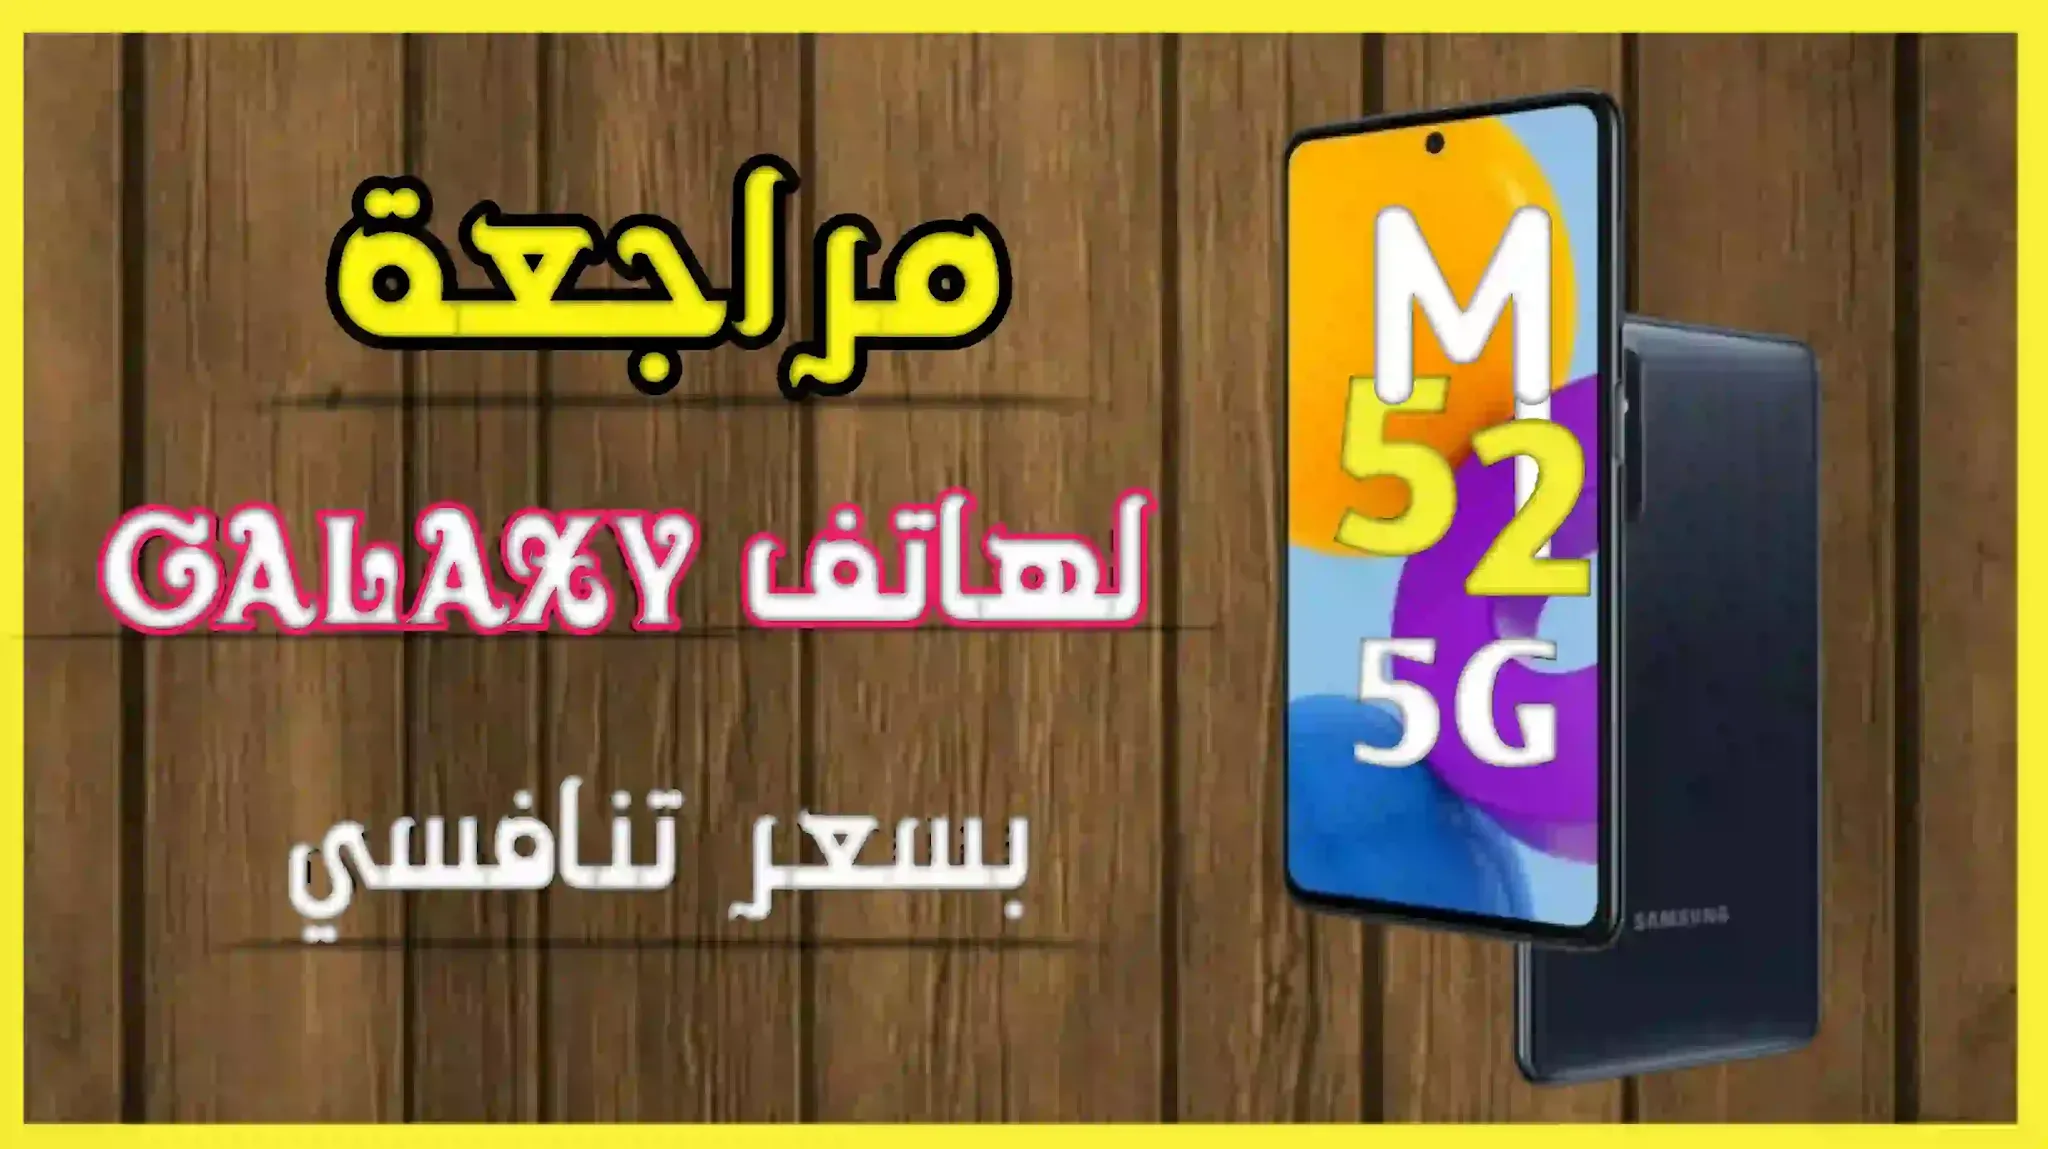 هاتف Galaxy M52 5G رسميا بمواصفات قوية ببطارية عملاقة و معالج قوي للفئة المتوسطة بشاشة امولد 120Hz